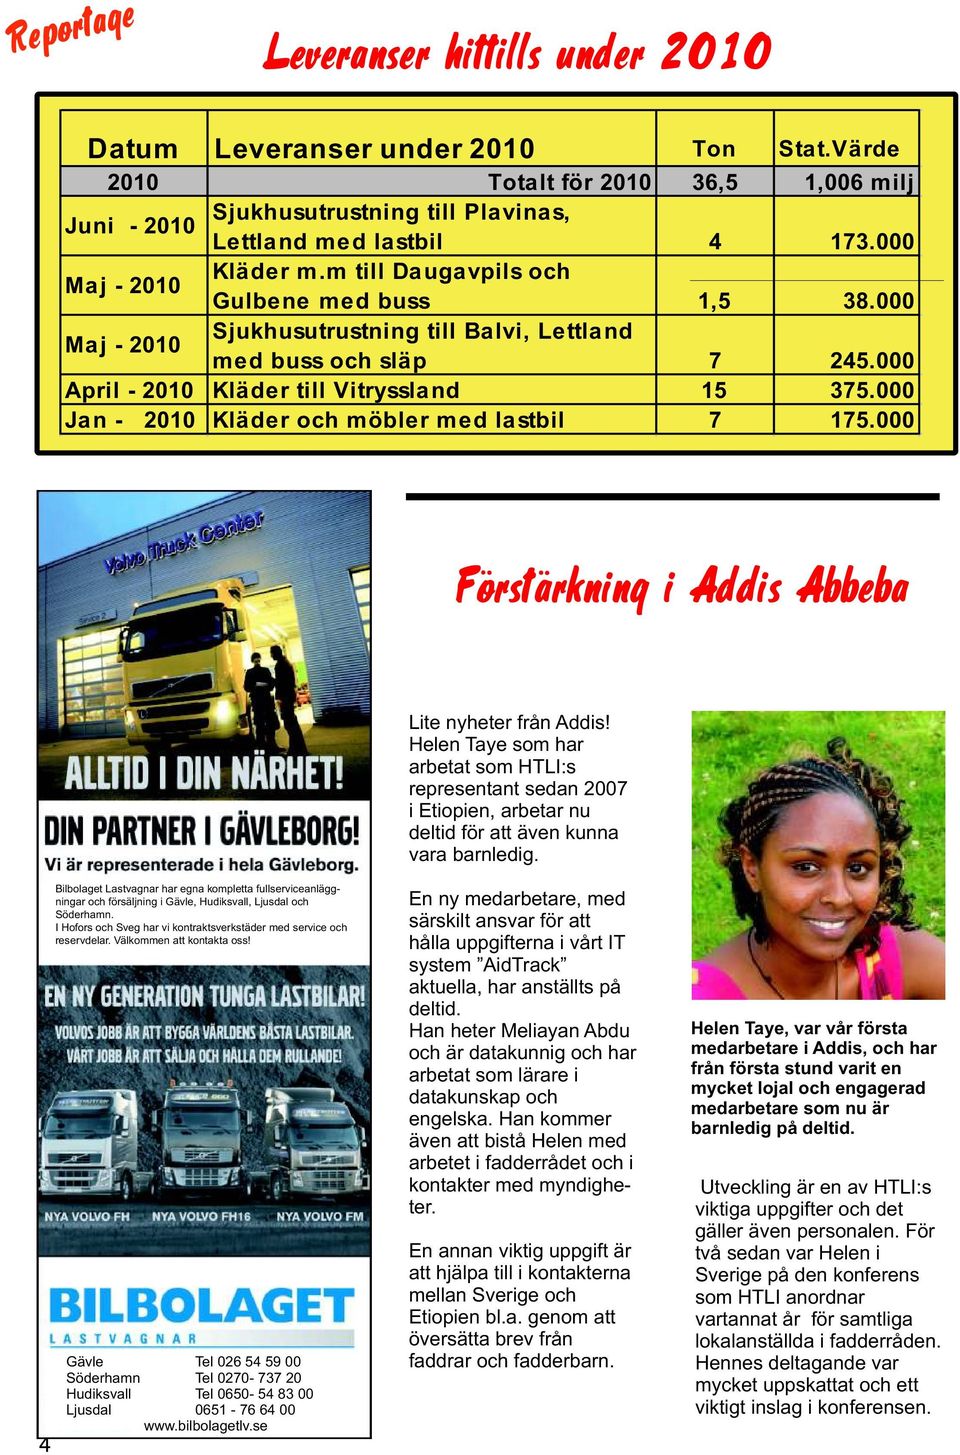 000 Jan - 2010 Kläder och möbler med lastbil 7 175.000 Lite nyheter från Addis!